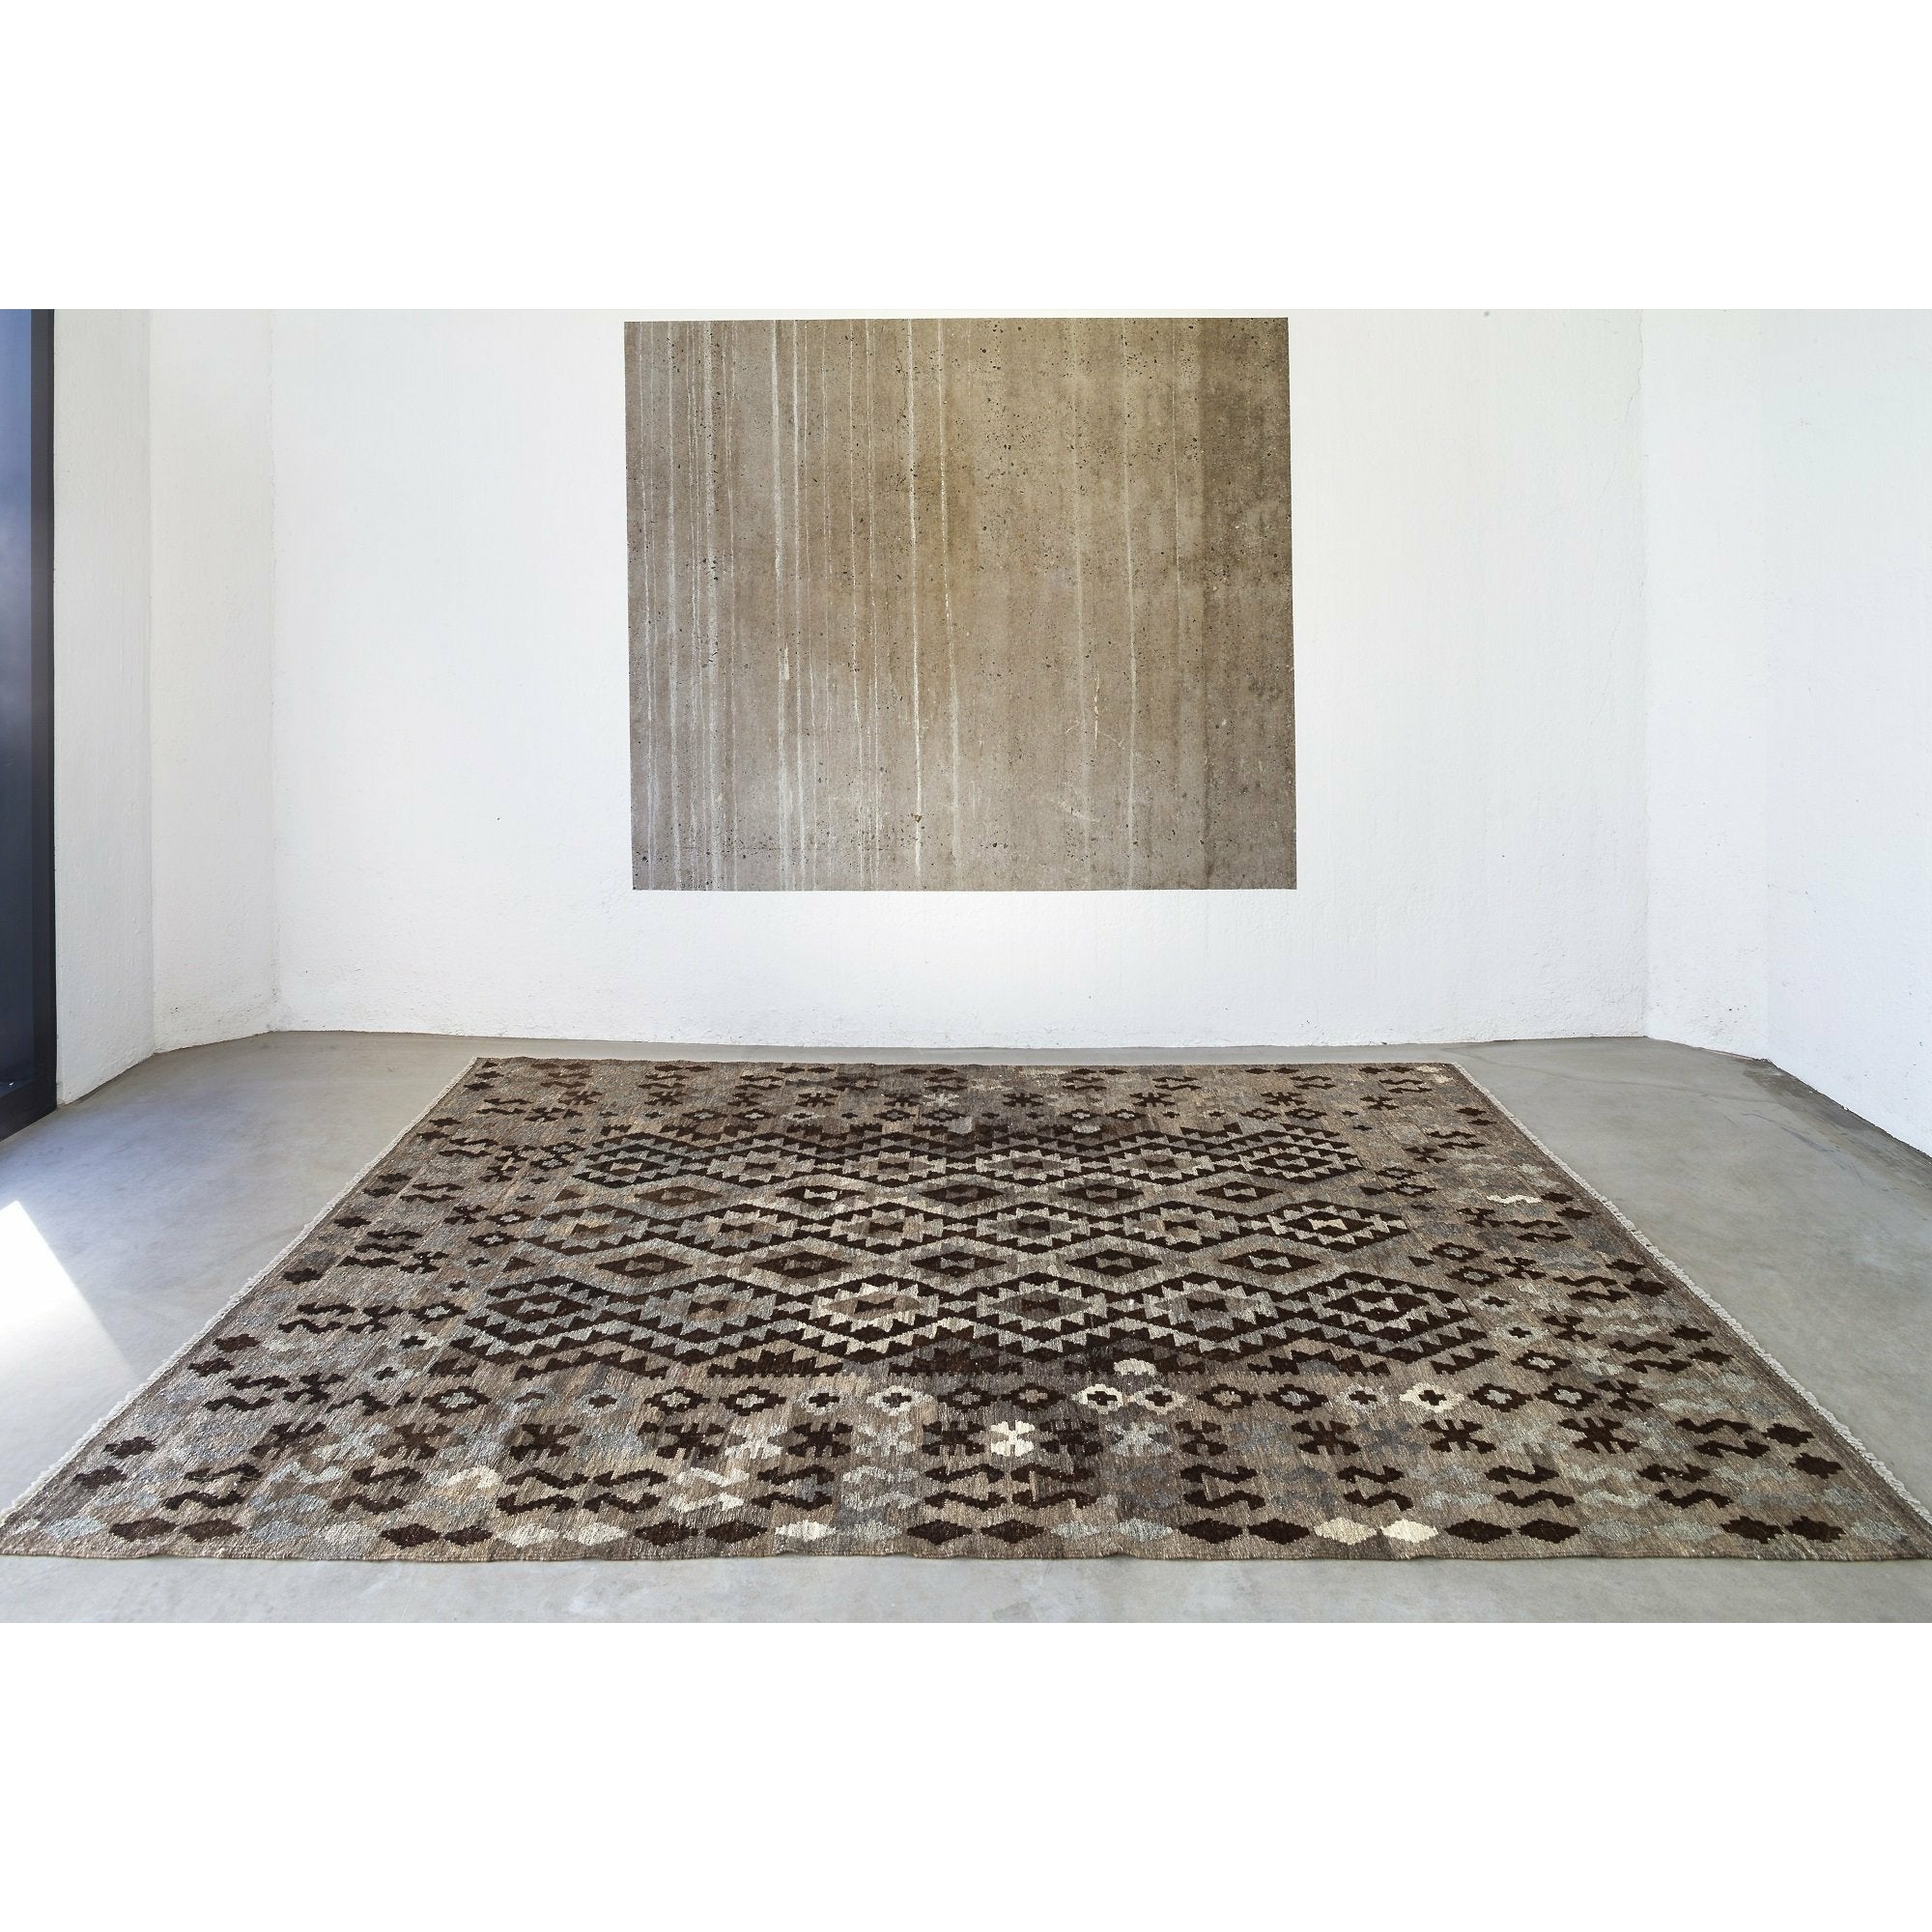 Massimo Kelim Tappeto naturale grigio scuro/marrone/nero, 200x300 cm